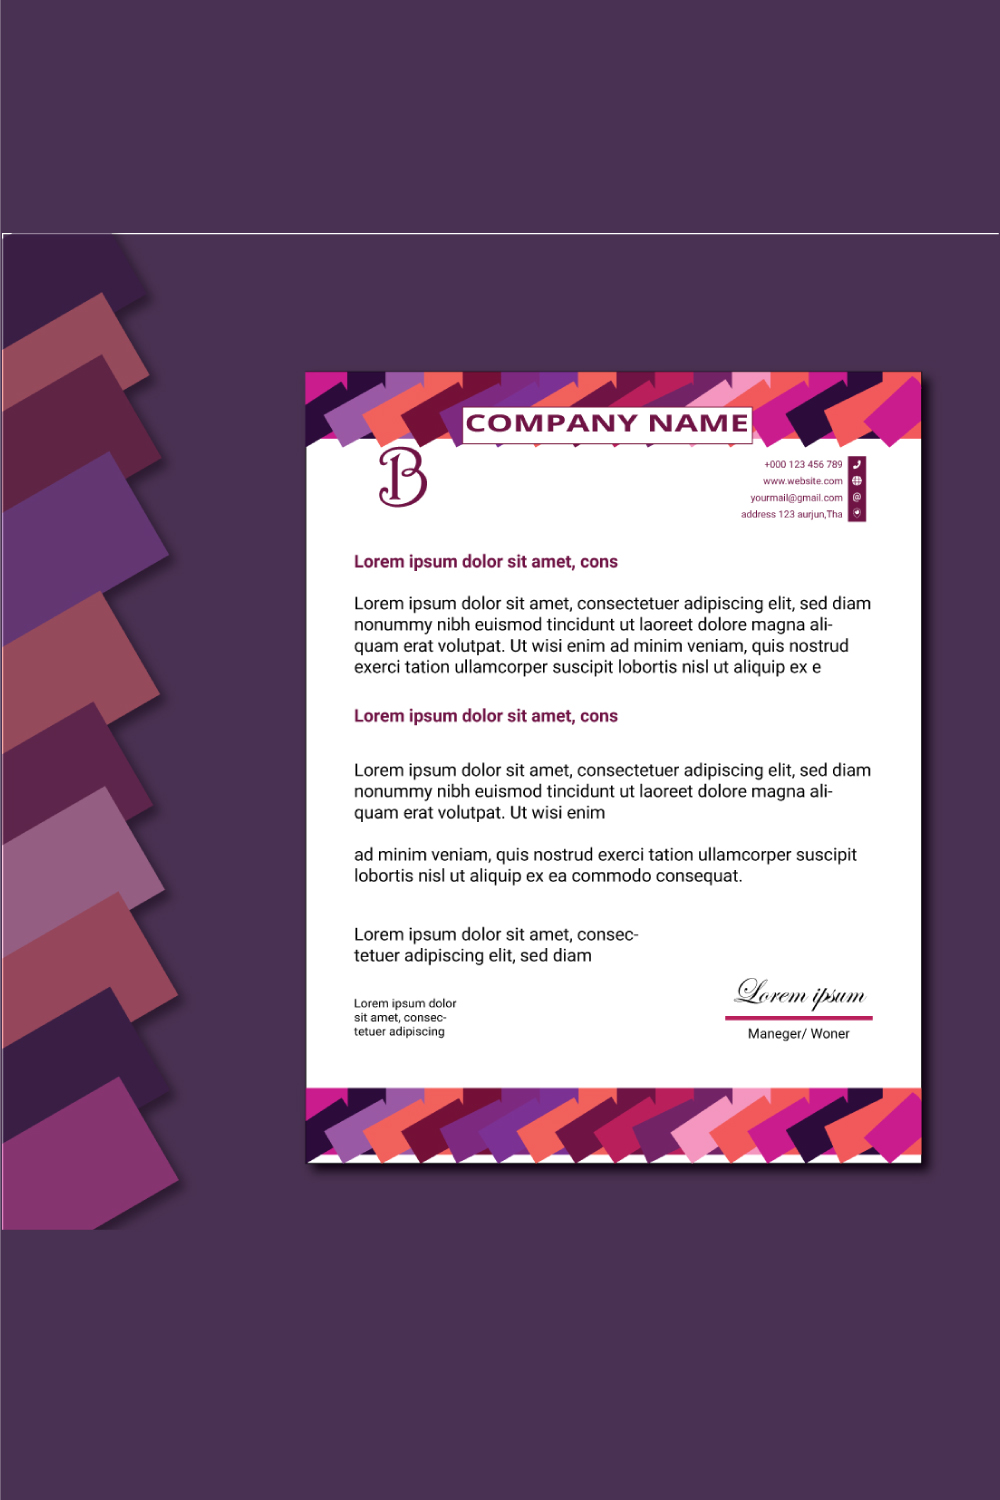 2 Corporate letterhead Template Bundles Design pinterest preview image.